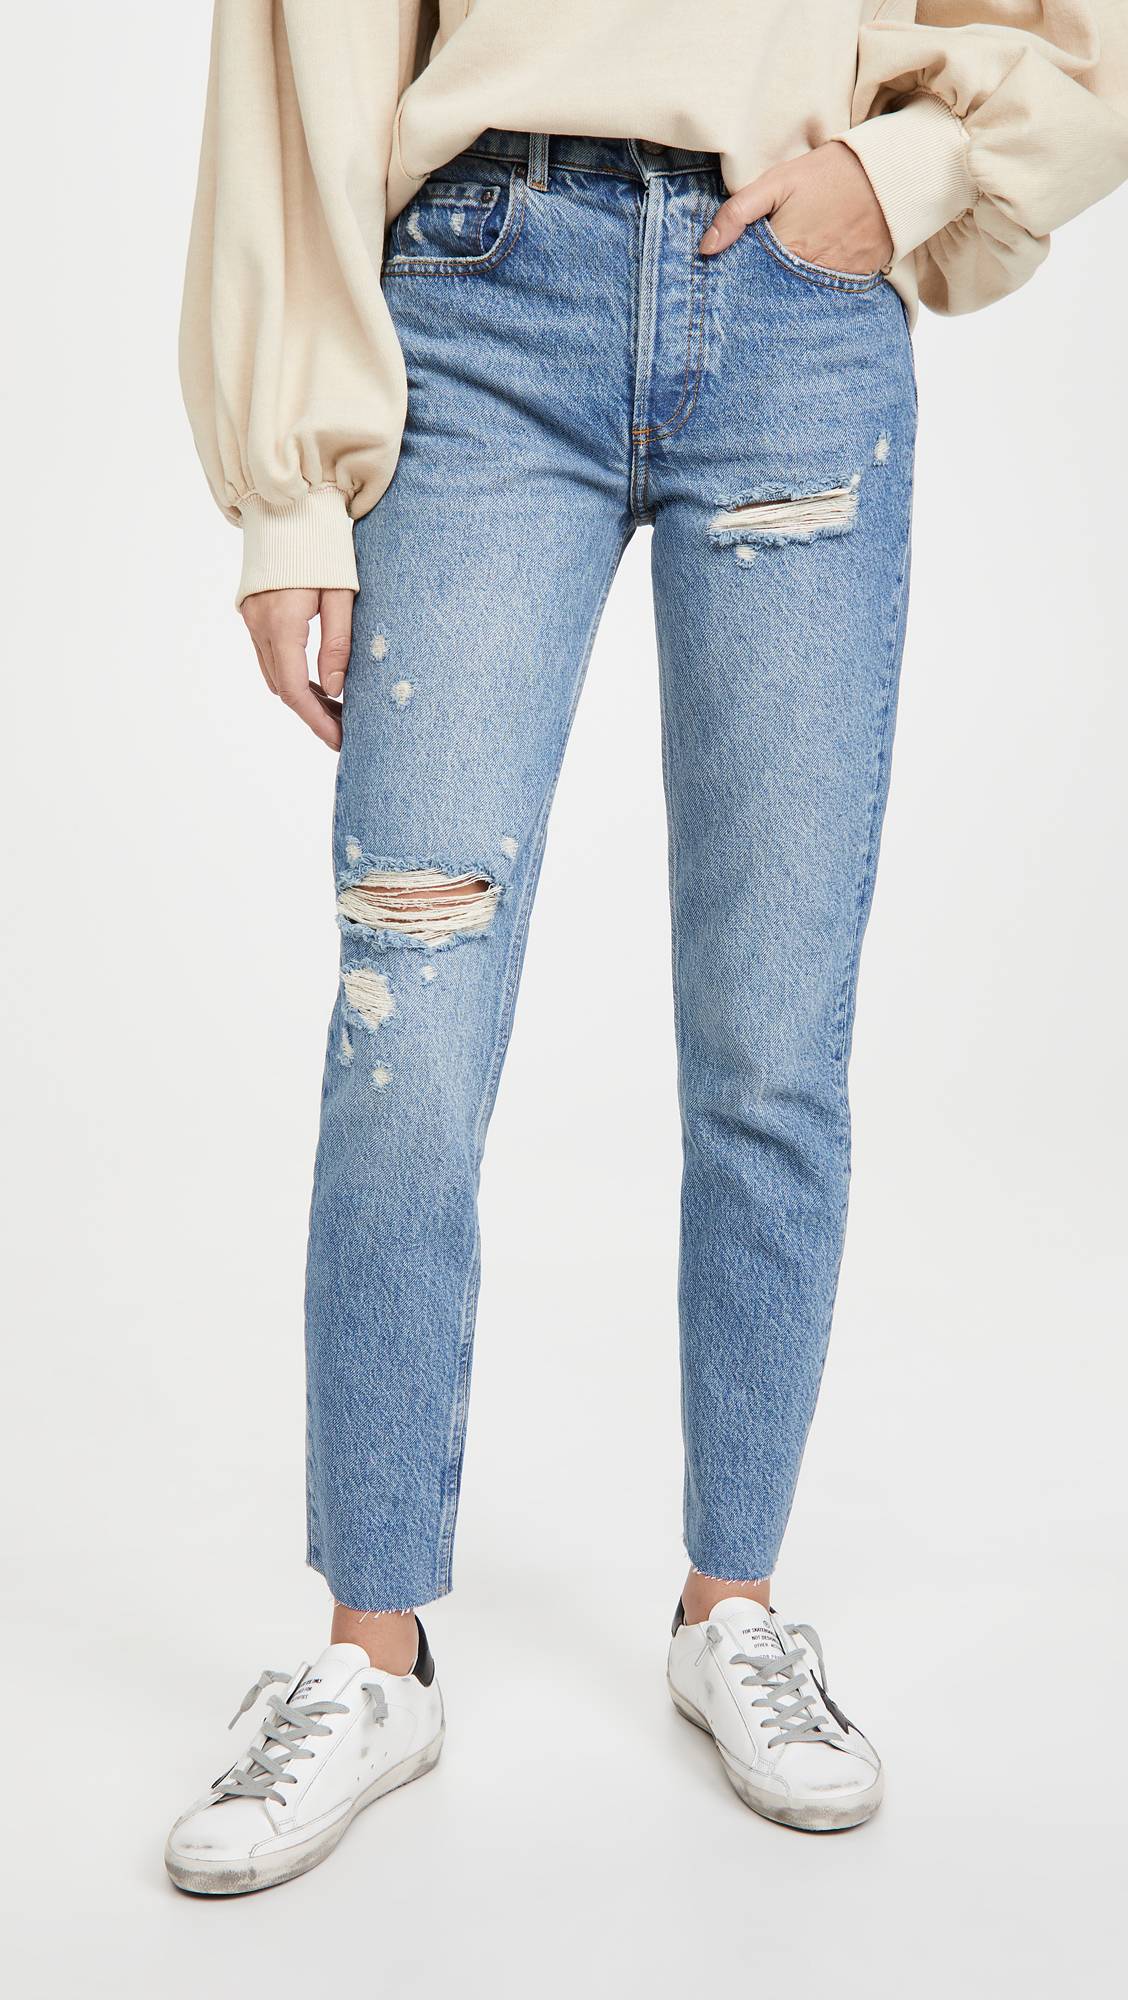 Một chút rách ở phần gối sẽ giúp bạn trong trẻ trung hơn khi diện jeans.